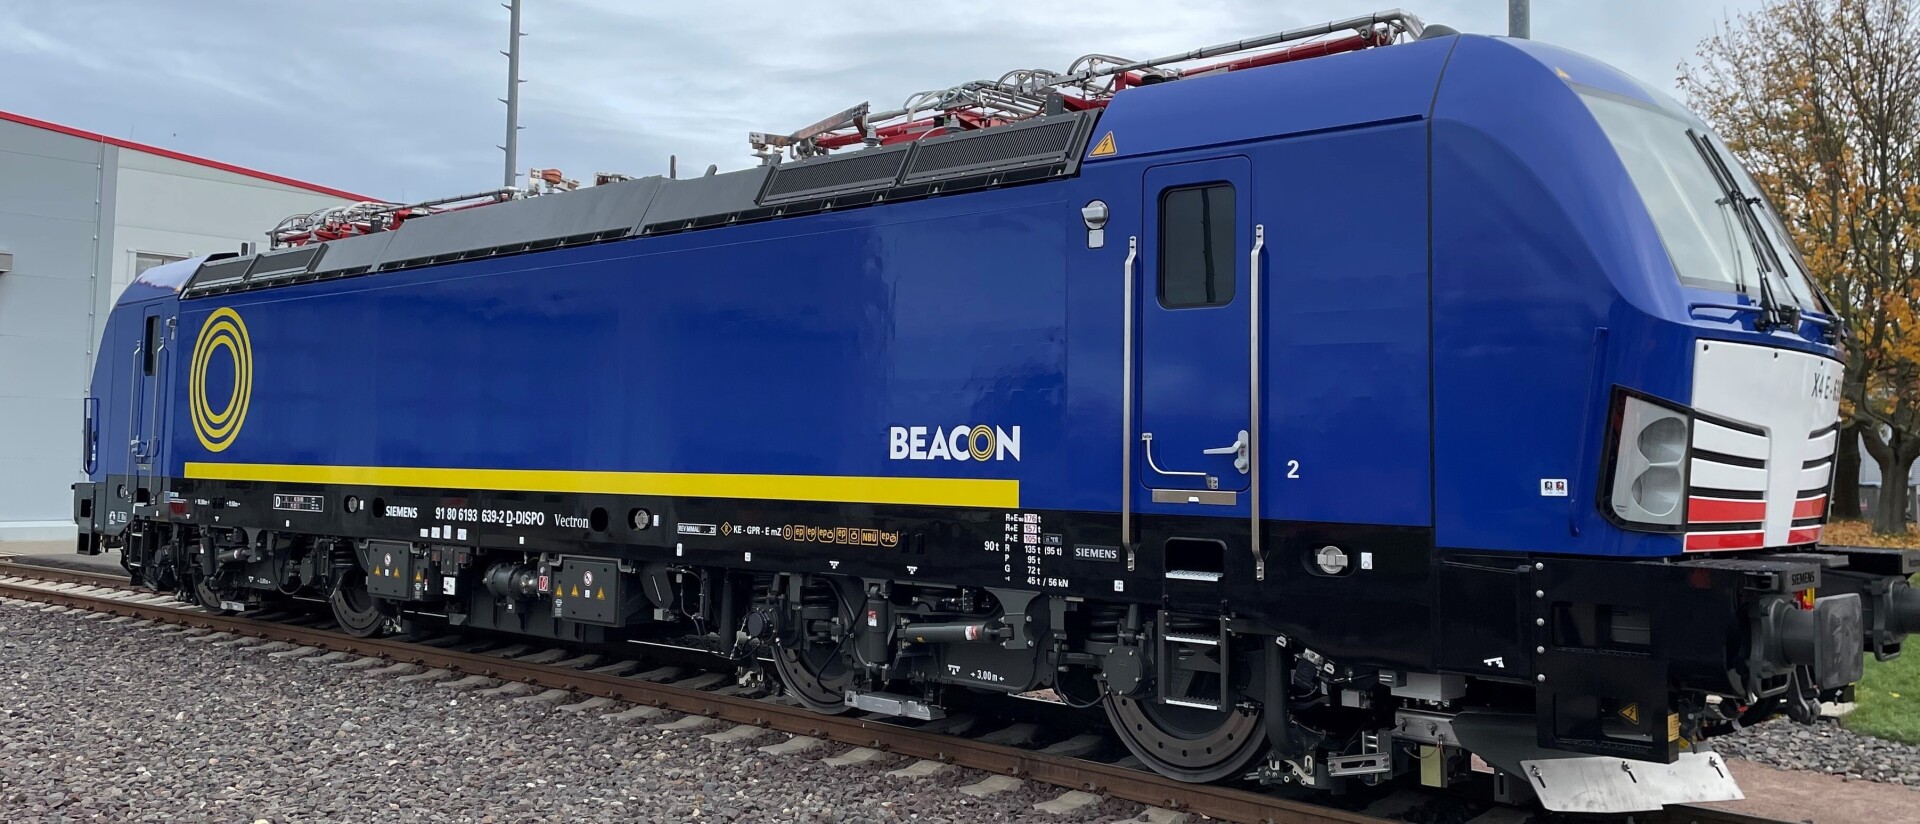 Foto-Beacon-Rail.jpeg